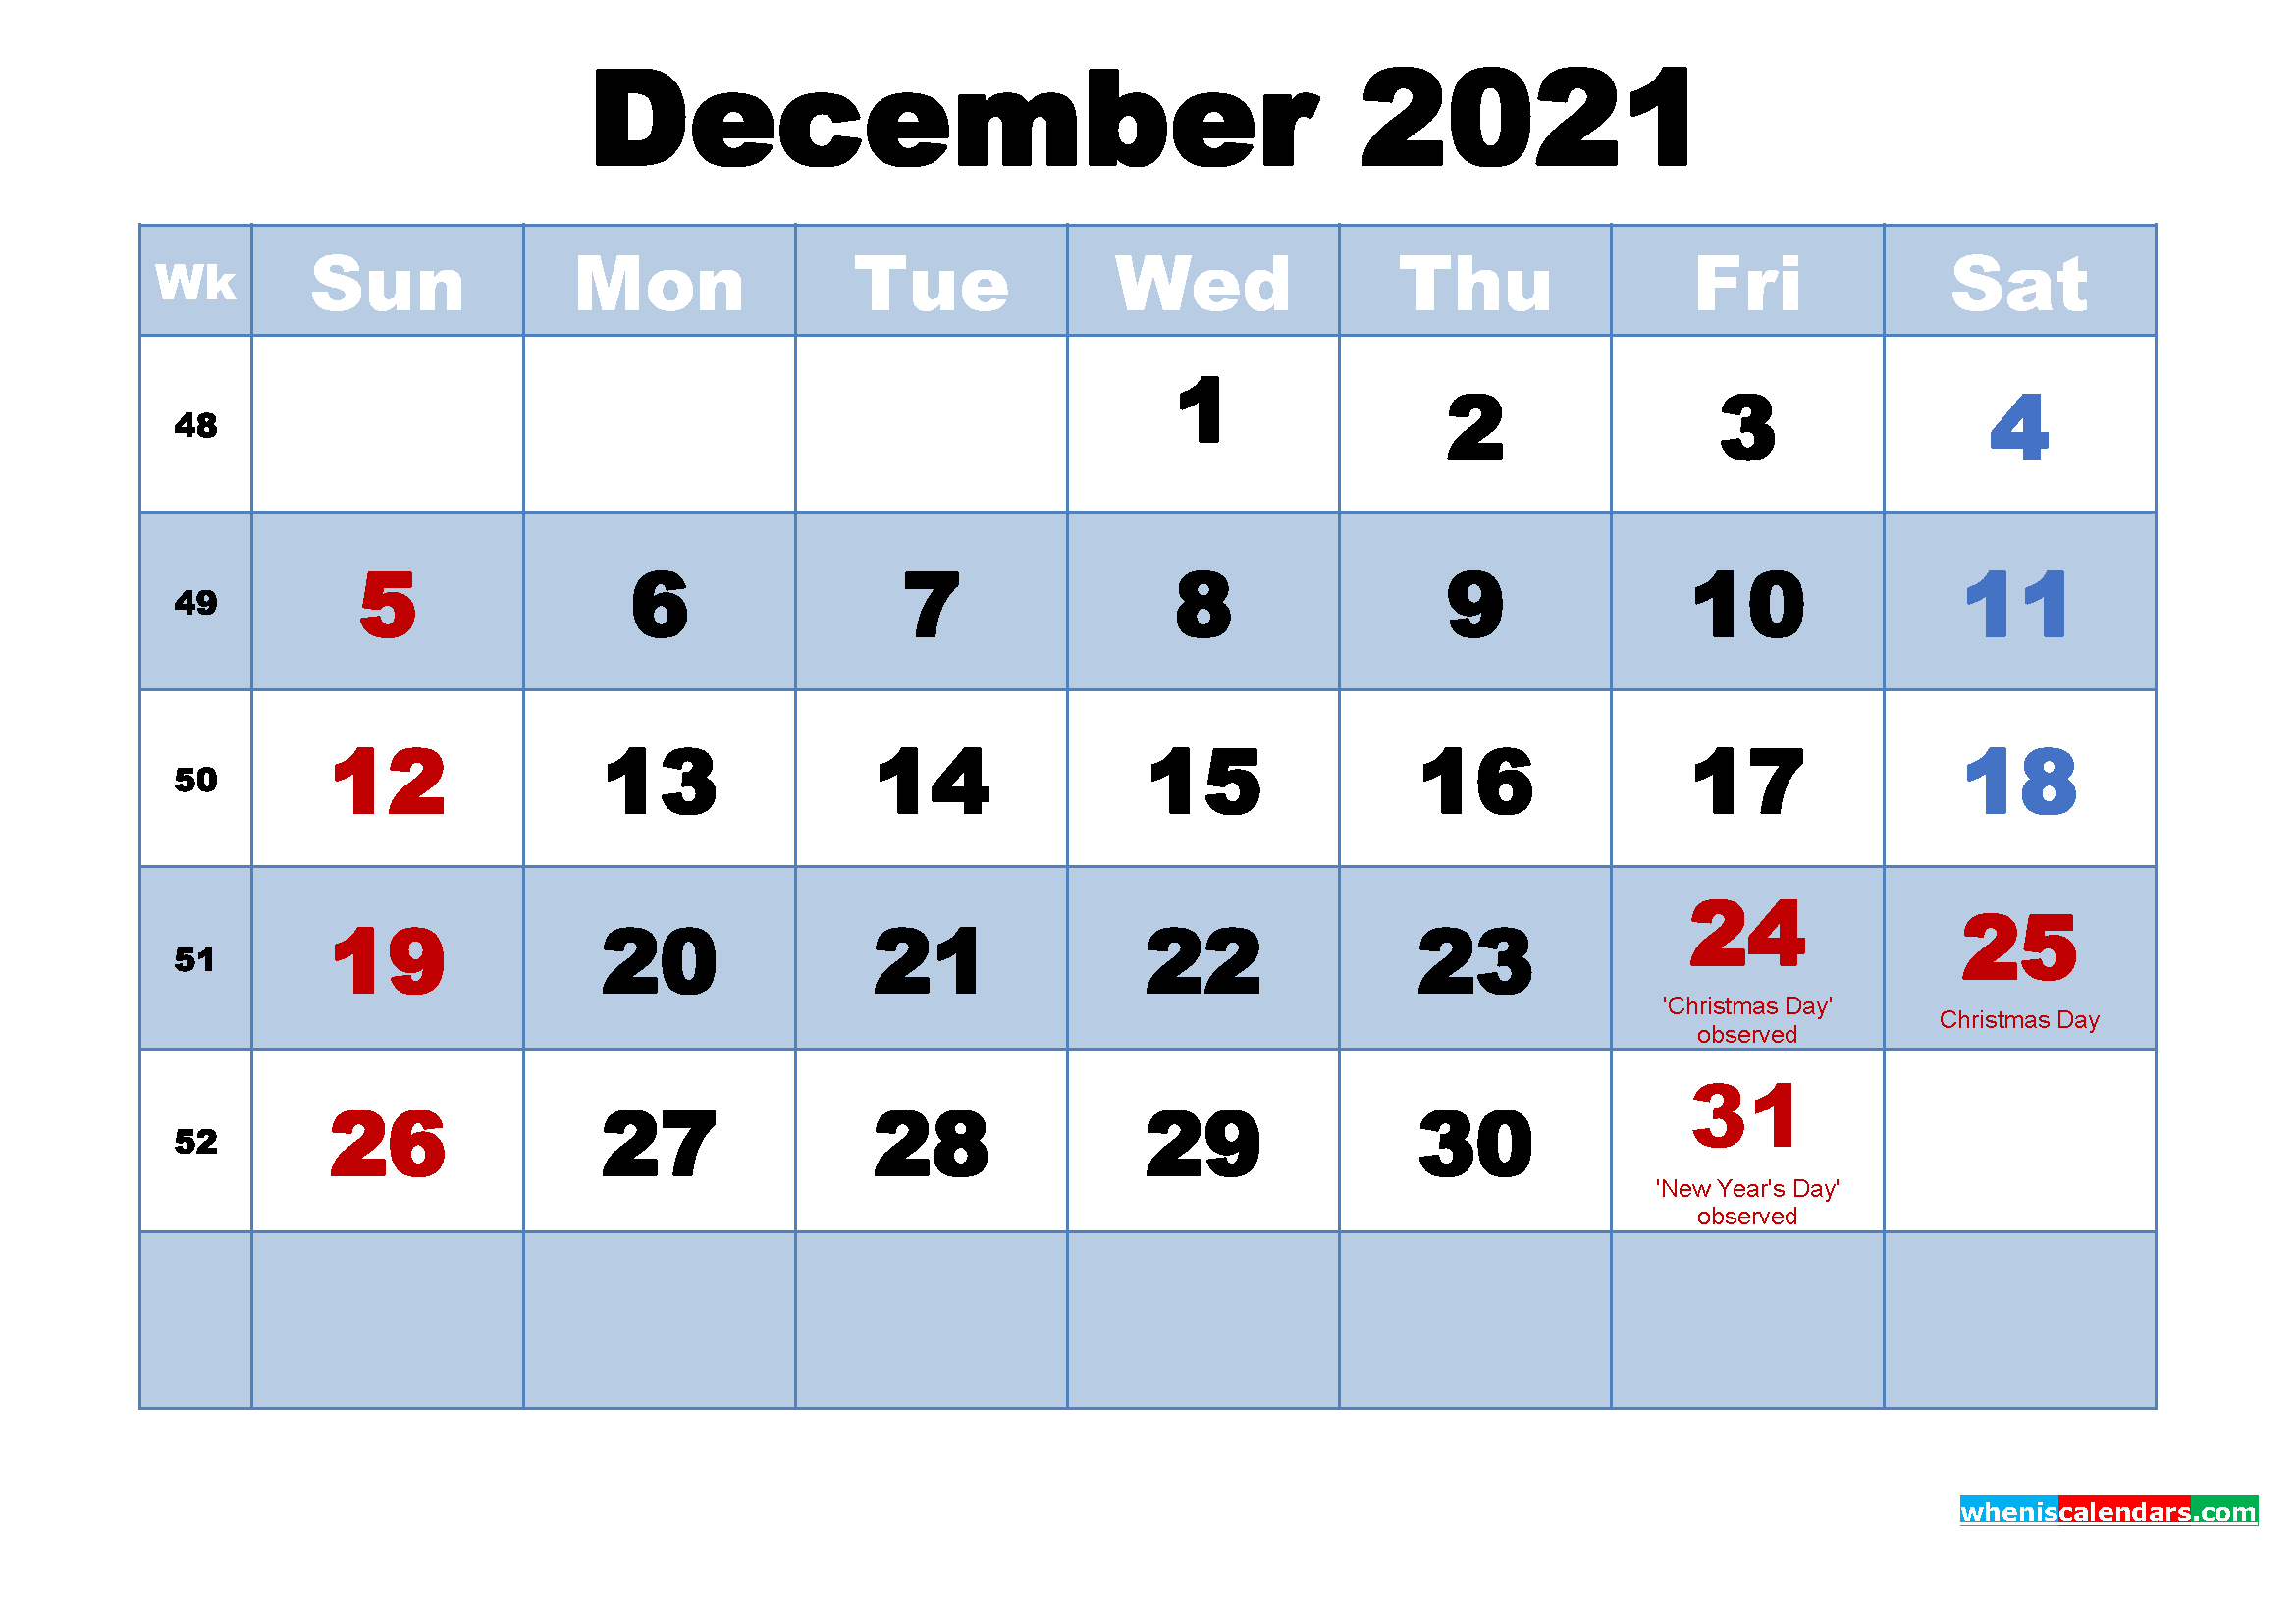 December 2021 Calendar Wallpaper High Resolution | Free December Jan 2021 Calendar